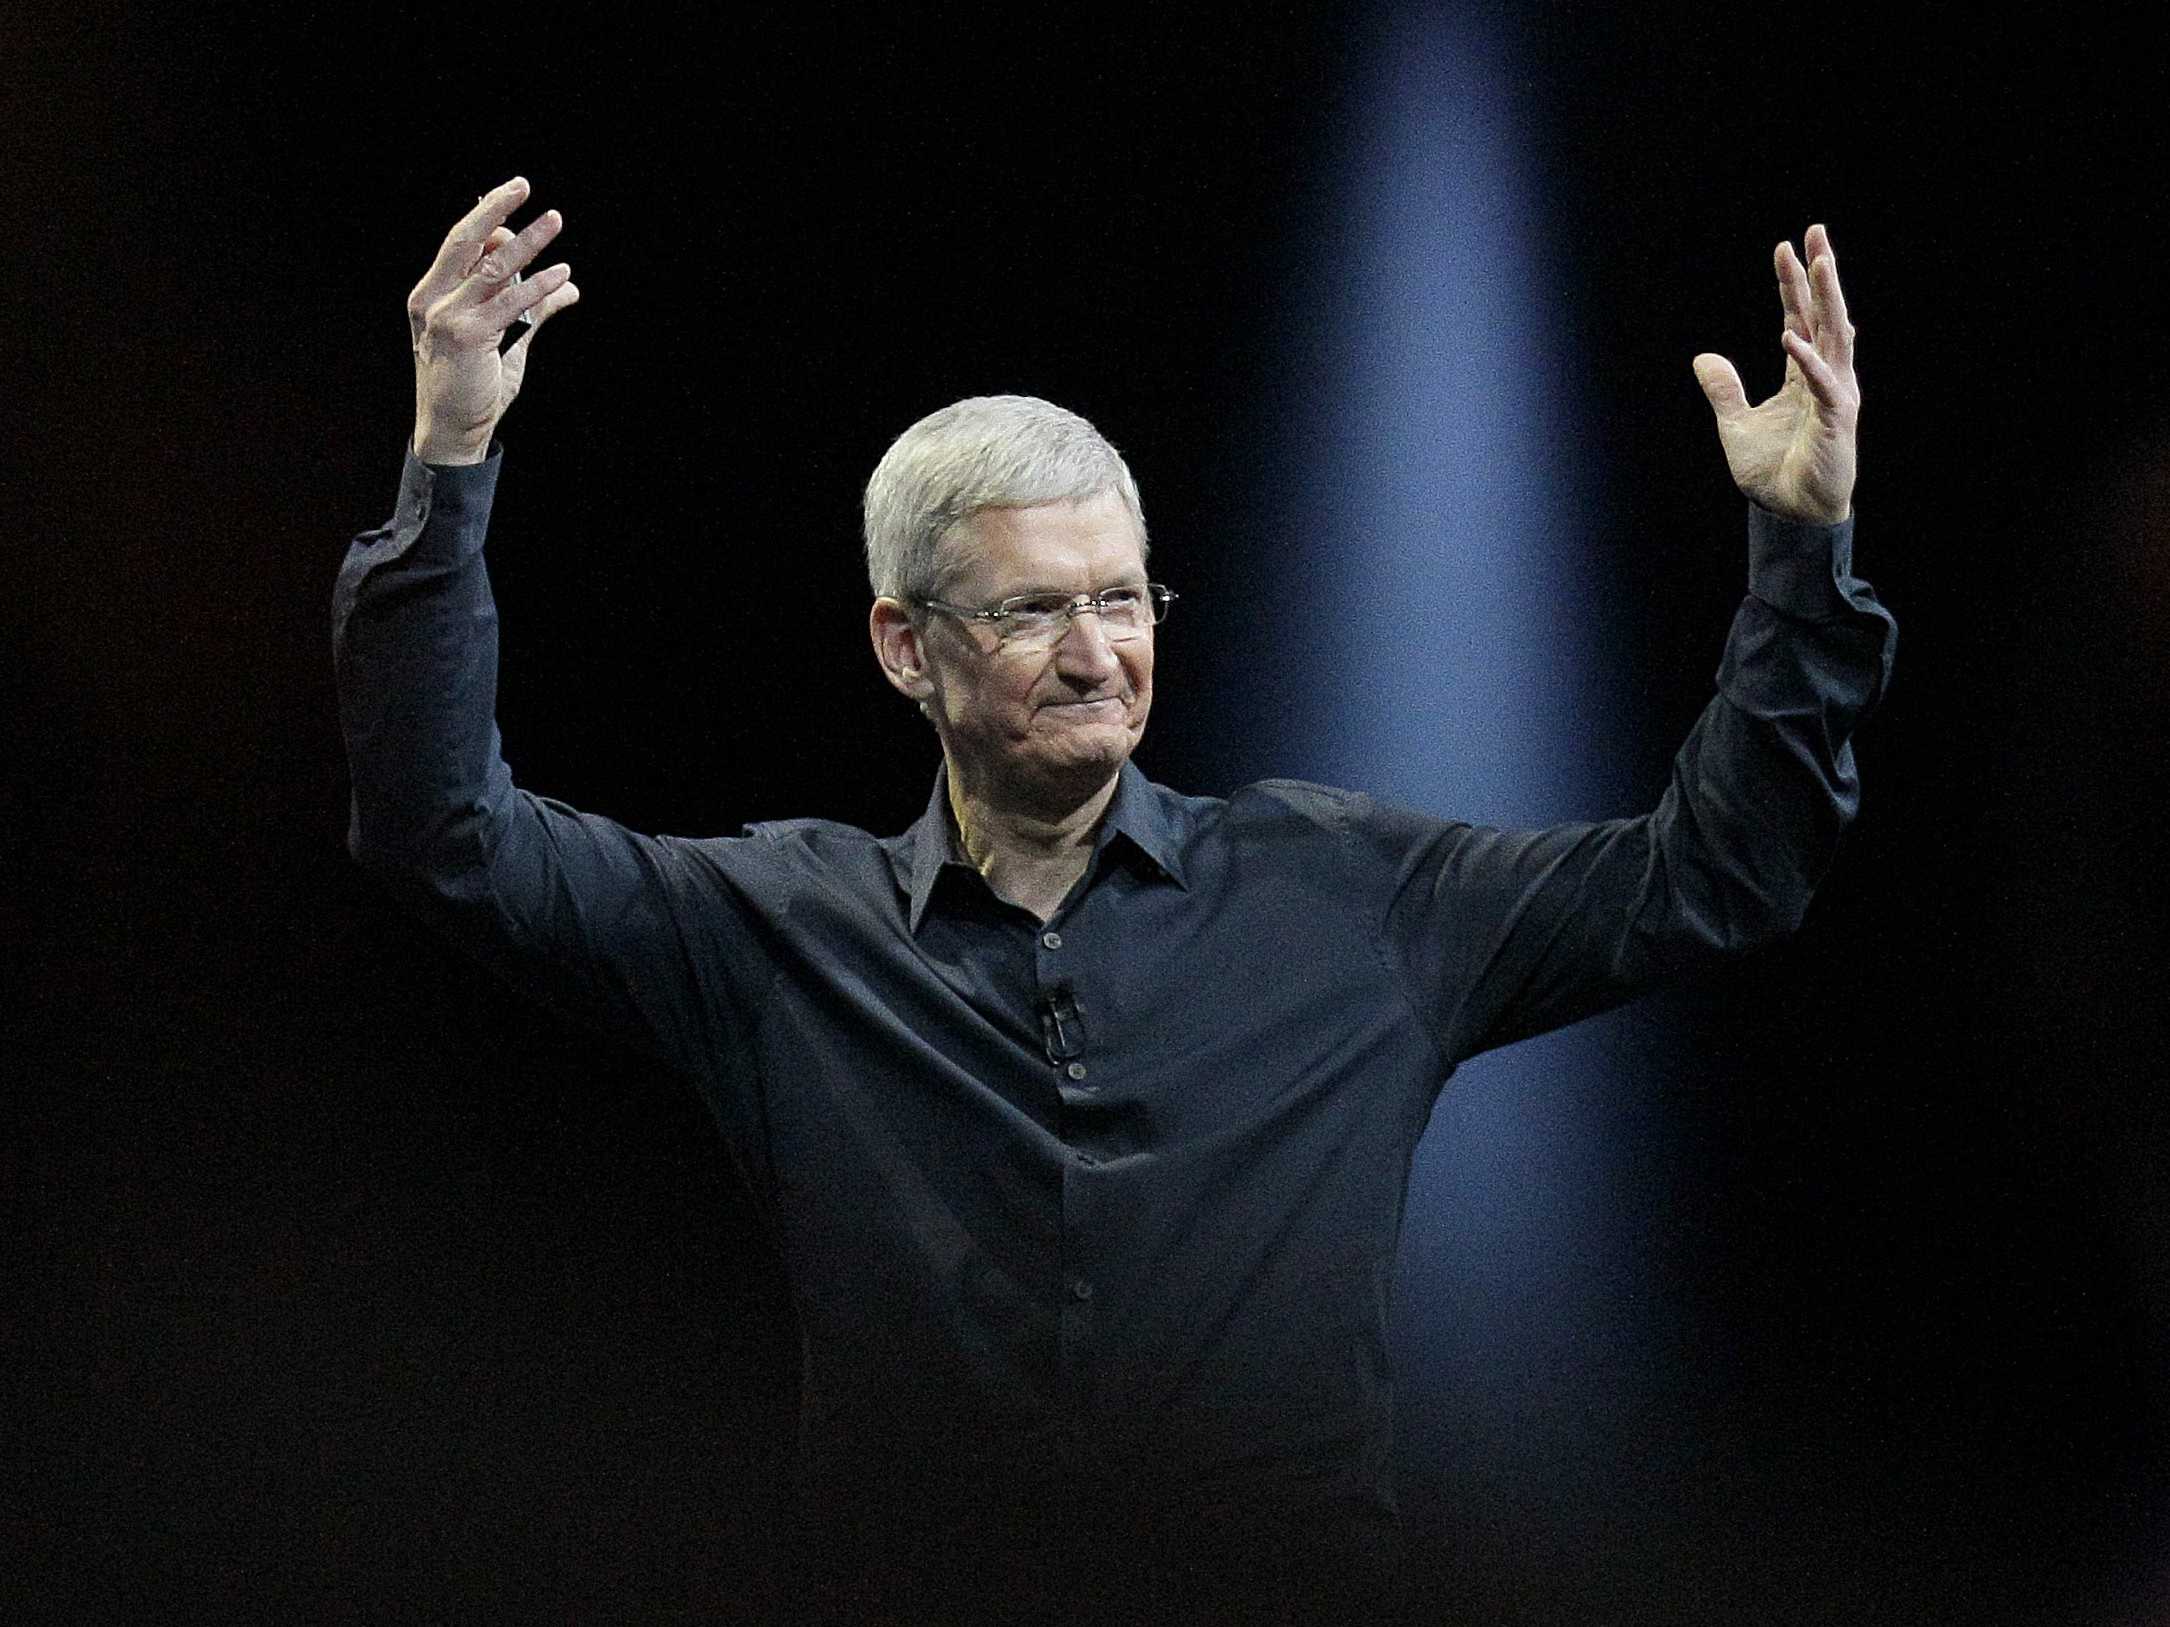 Hình nền Tim Cook HD: Xem những bức ảnh chất lượng cao của Tim Cook, CEO của Apple. Hình nền của ông là một món quà đặc biệt cho những fan hâm mộ Apple. Hãy choáng ngợp trước vẻ đẹp mạnh mẽ và hào quang của ông trong bộ ảnh HD này.